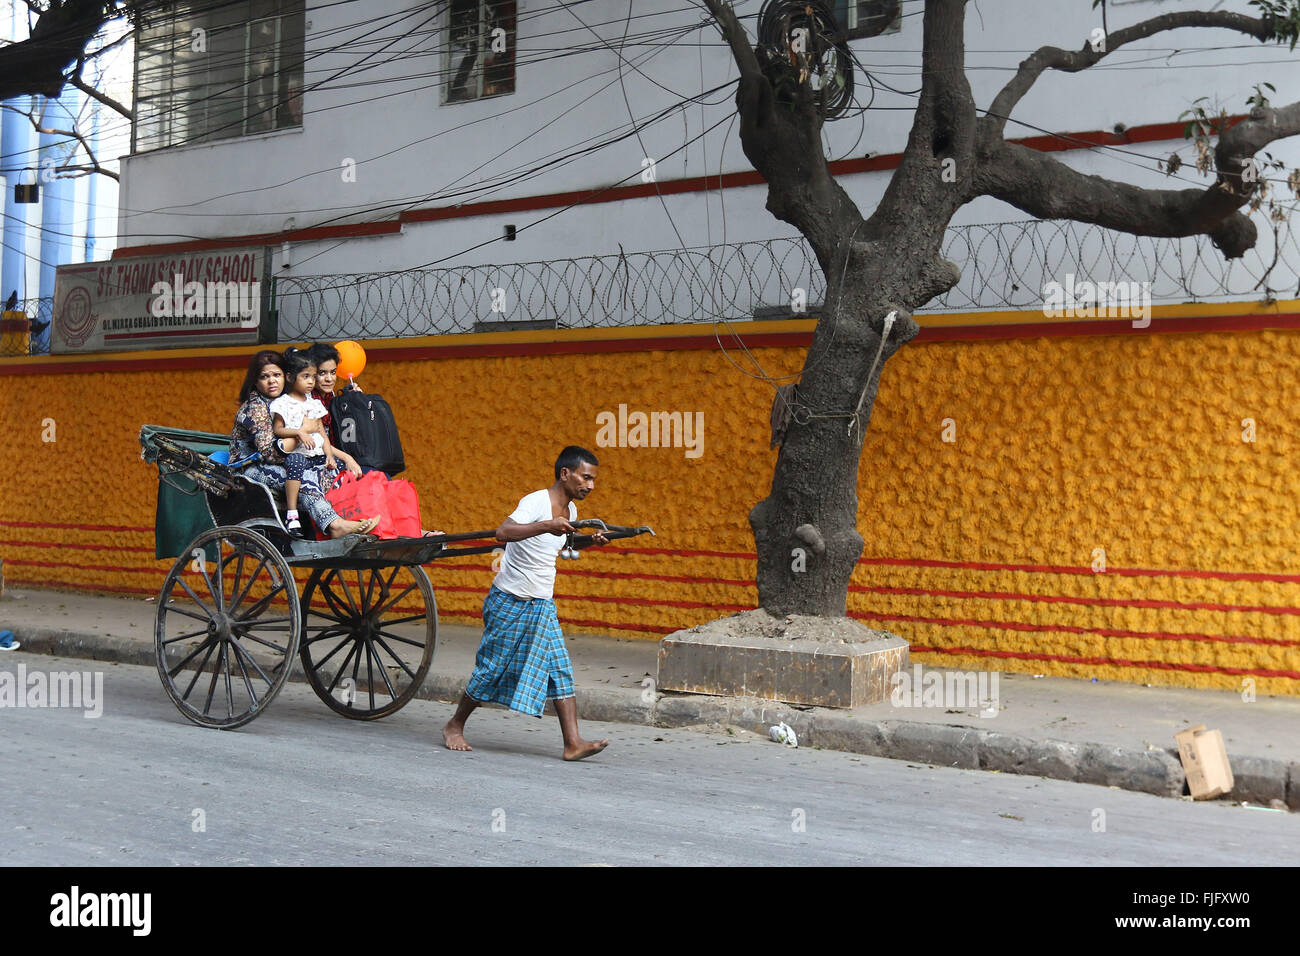 En tirant la main de l'extracteur de pousse-pousse en tirant avec passager passe devant un mur coloré de la rue à Calcutta. Photo de Palash Khan Banque D'Images